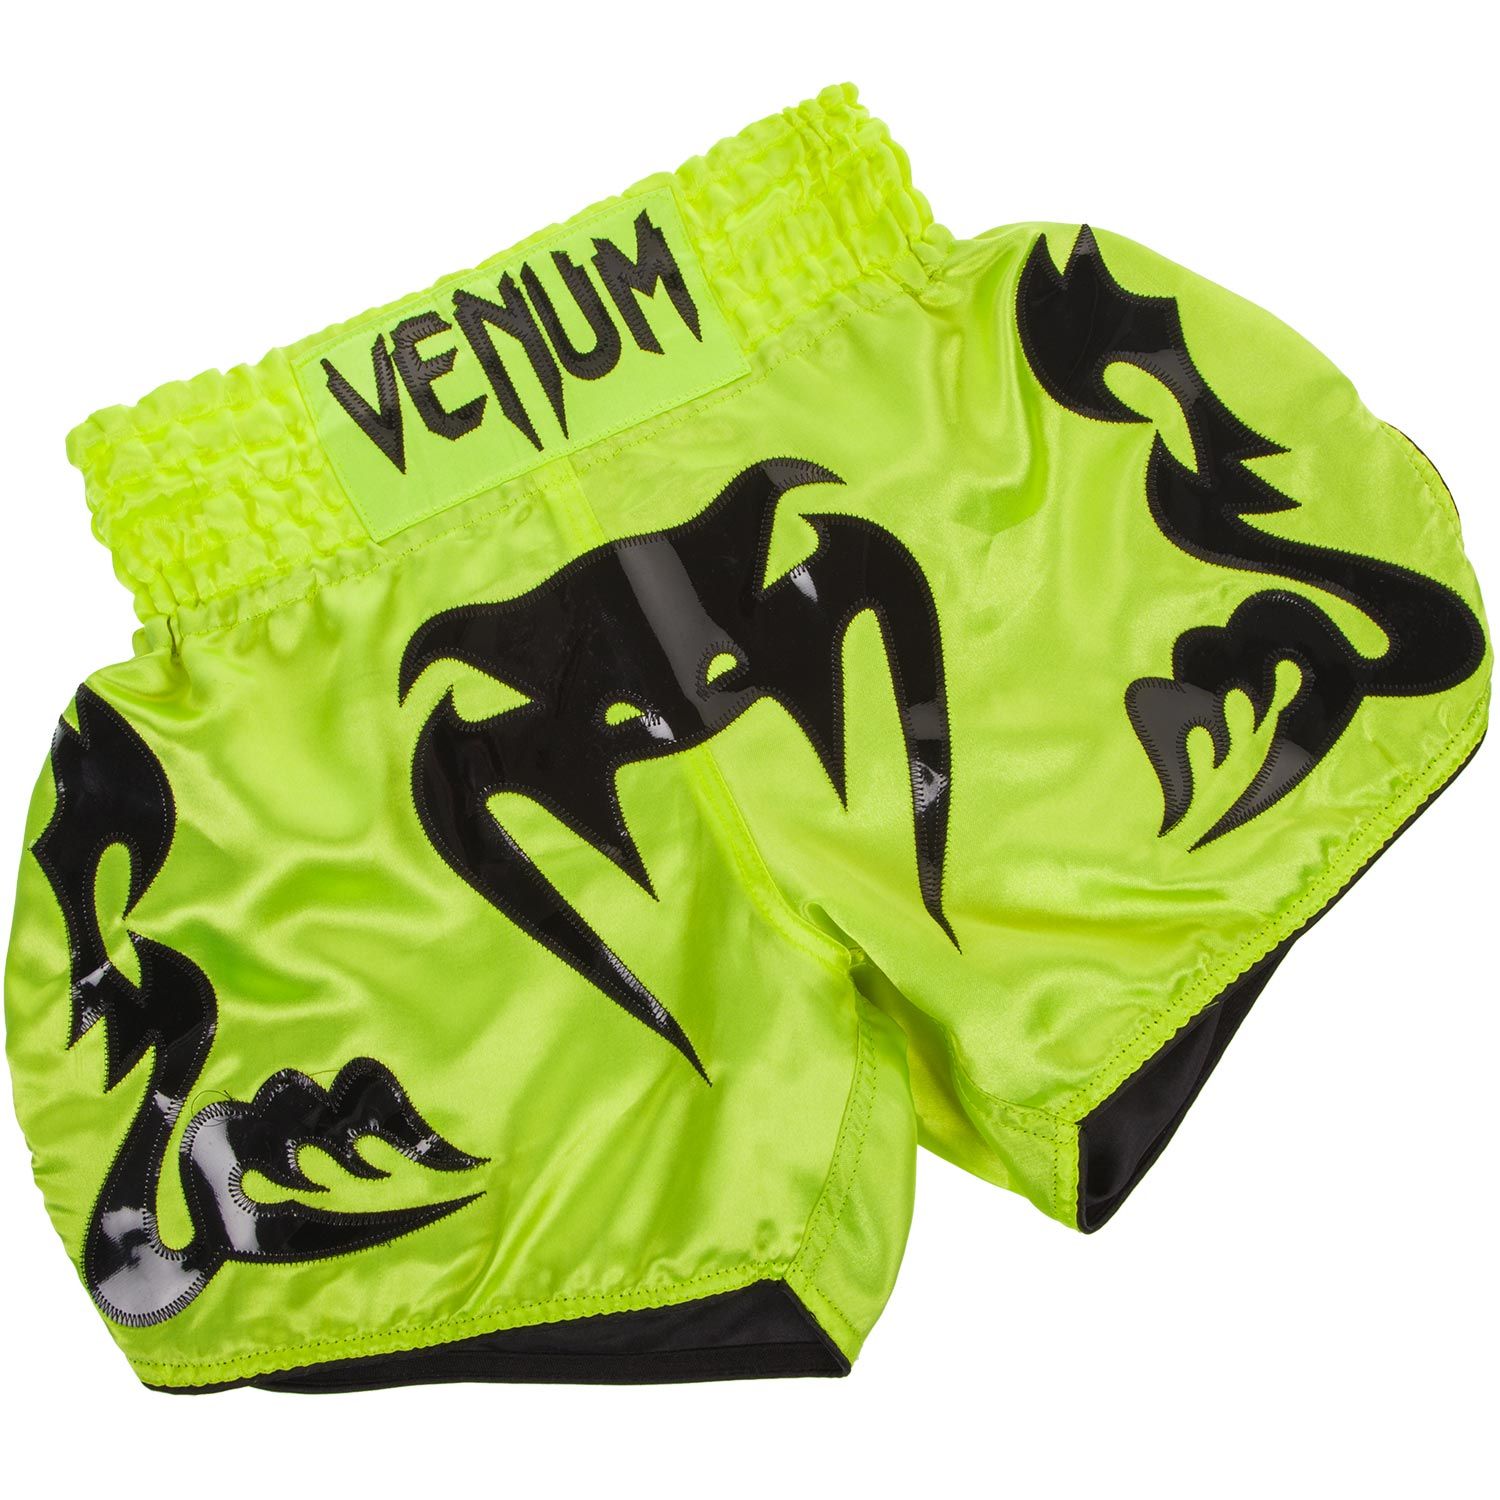 Pantalones Cortos de Muay Thai Venum Bangkok Inferno - Neo amarillo